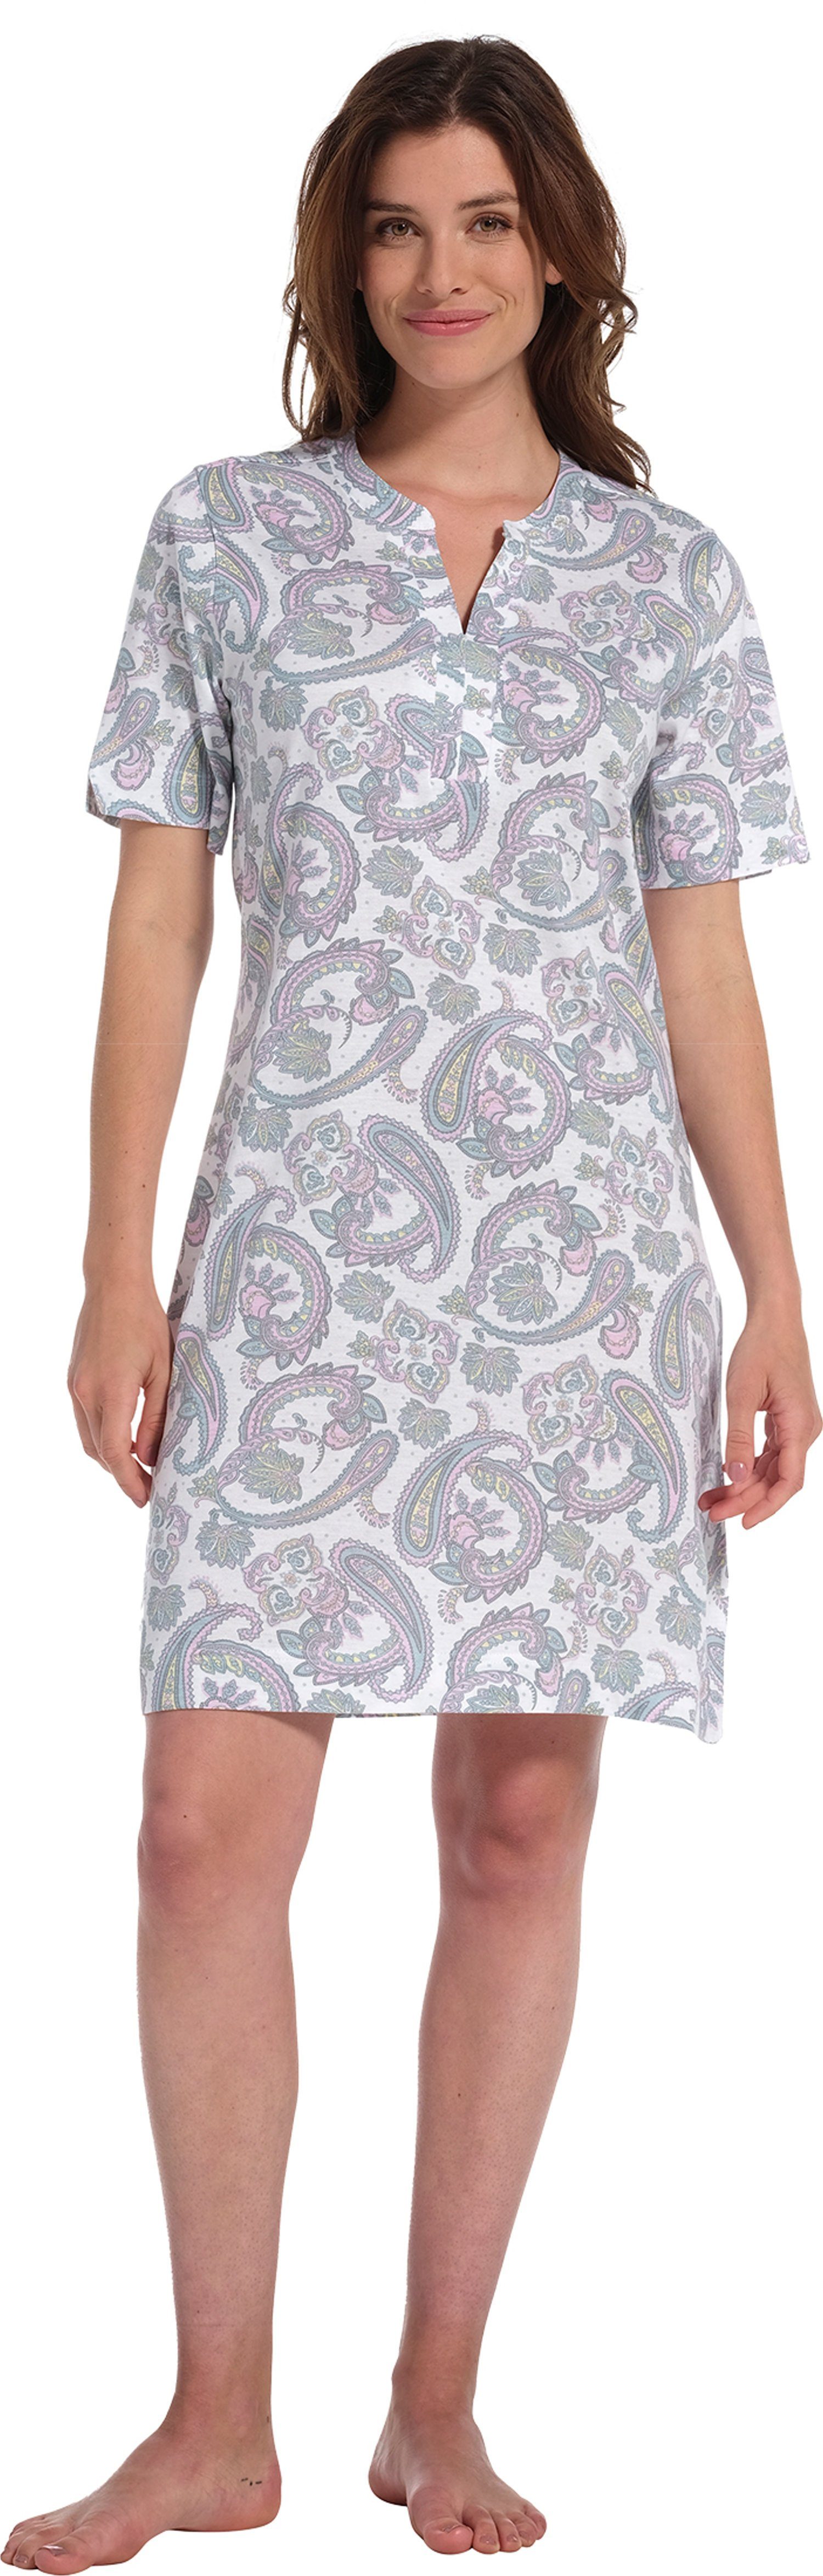 Pastunette Nachthemd Damen Schlafshirt mit kurzem Arm (1-tlg) Paisley Muster, auch in großen Größen